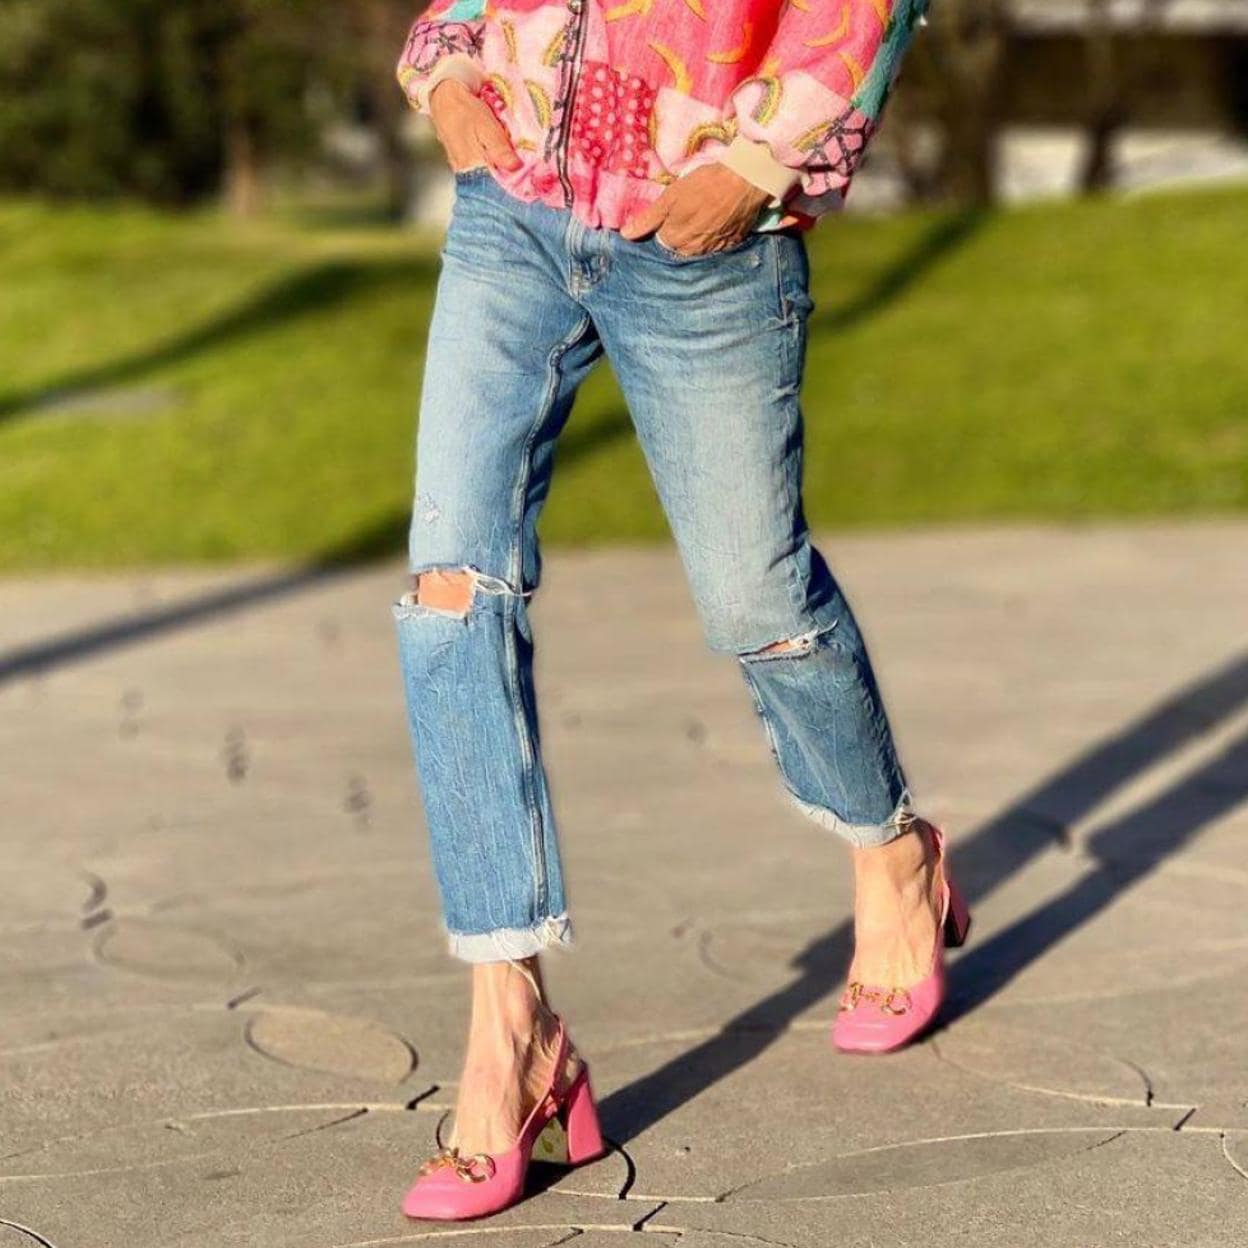 éxito Menagerry Norma MODA: Cortefiel tiene los zapatos más bonitos, cómodos y prácticos que  necesitas para vestir a diario en primavera ¡Con descuento! | Mujer Hoy